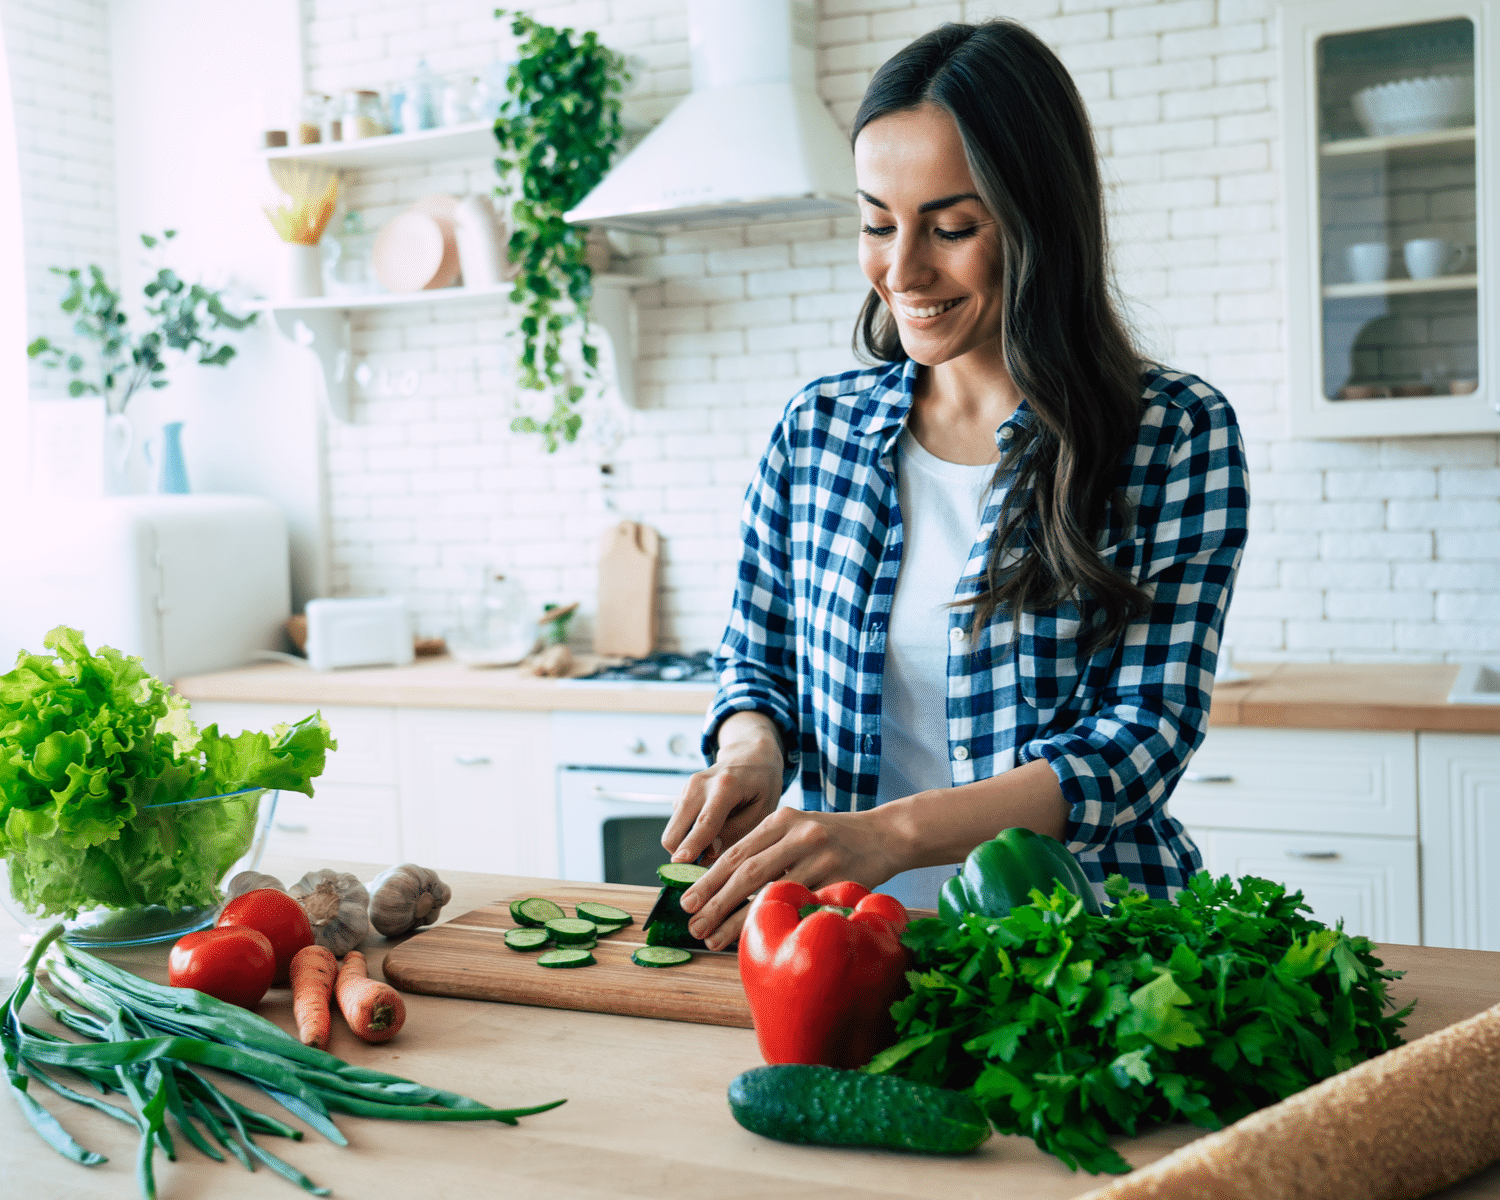 zena-v-kuchyni-priprava-zeleninoveho-salatu